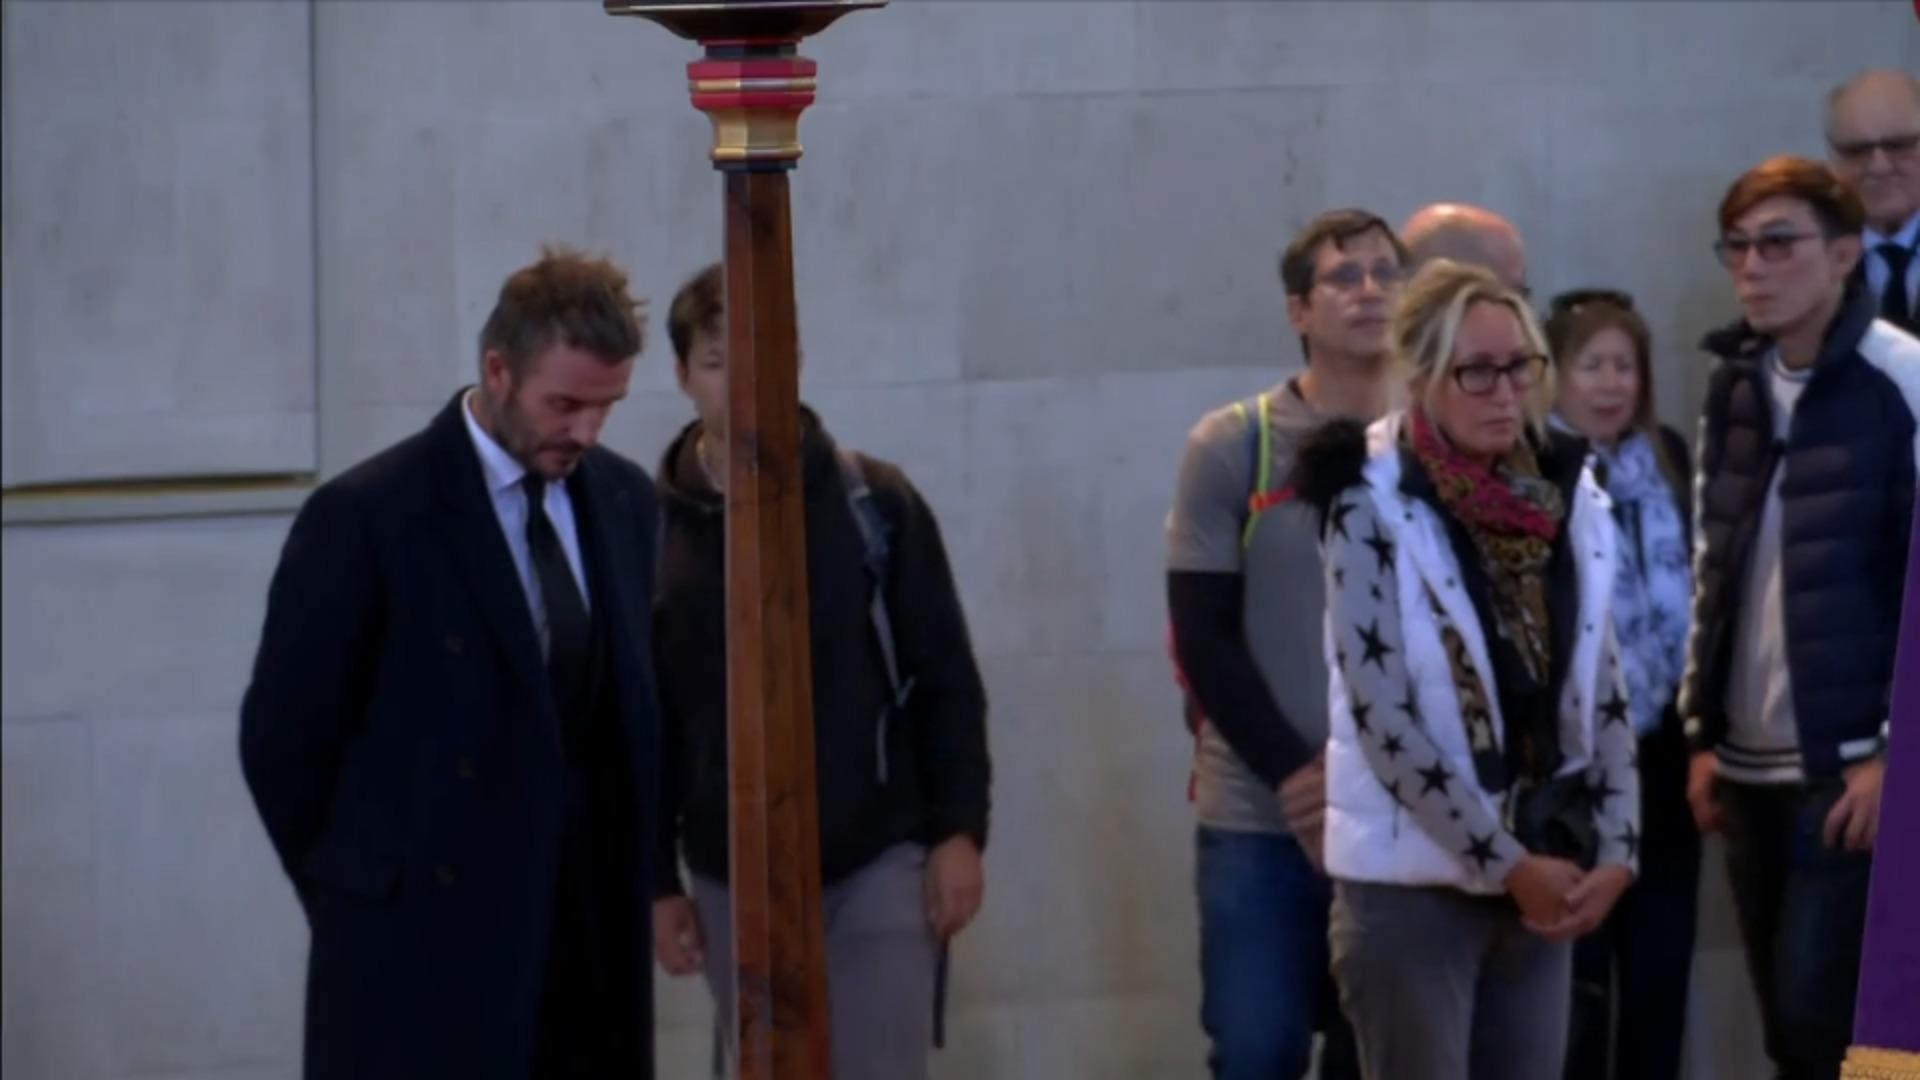 David Beckham si inchina davanti alla bara della regina.  Lo guarda da 14 ore